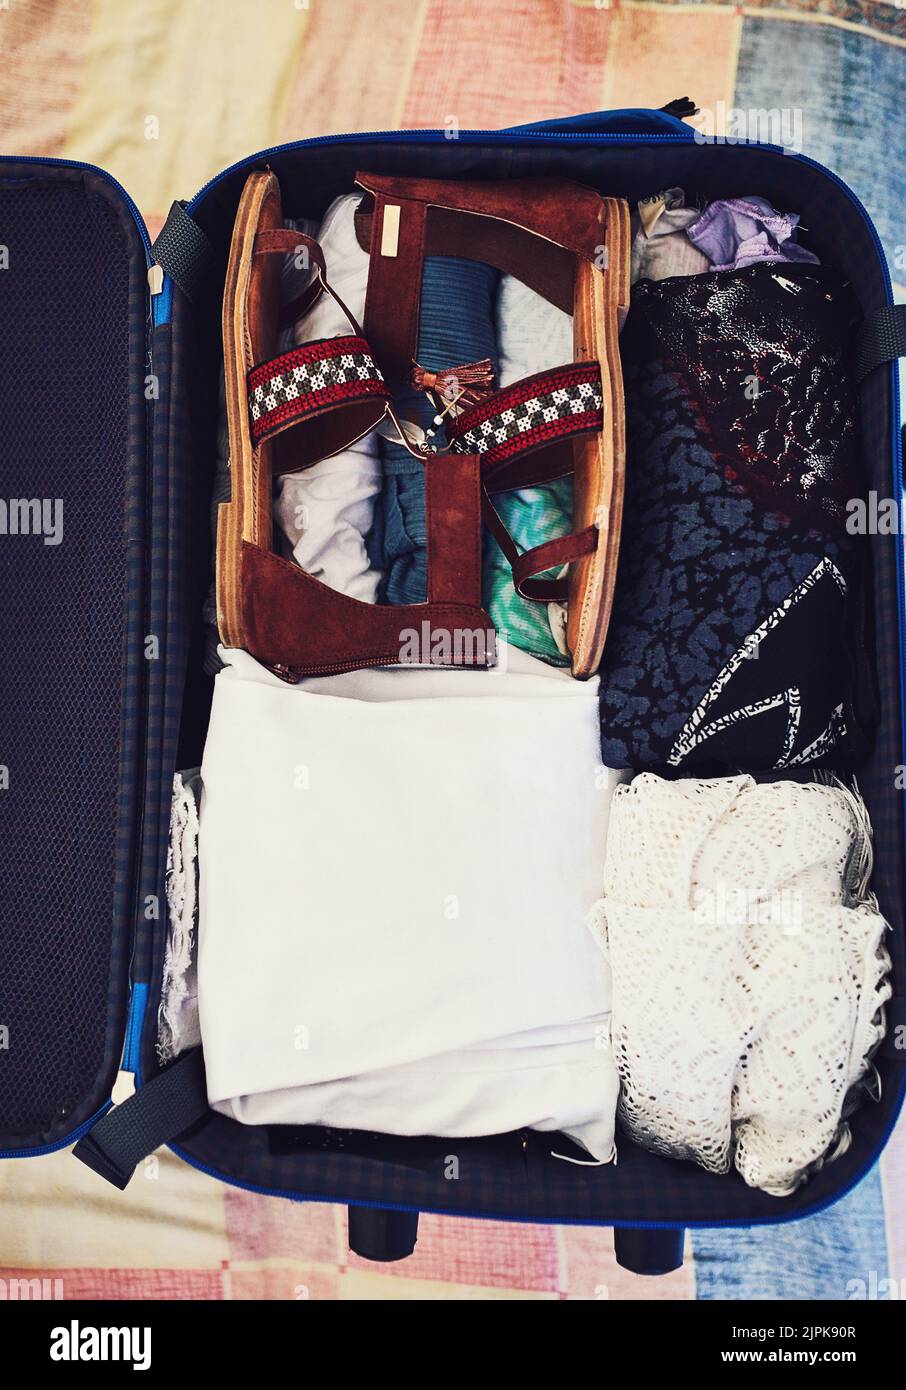 Alles für diesen Urlaub gepackt. Aufnahme eines Koffers, der mit Kleidung verpackt ist. Stockfoto